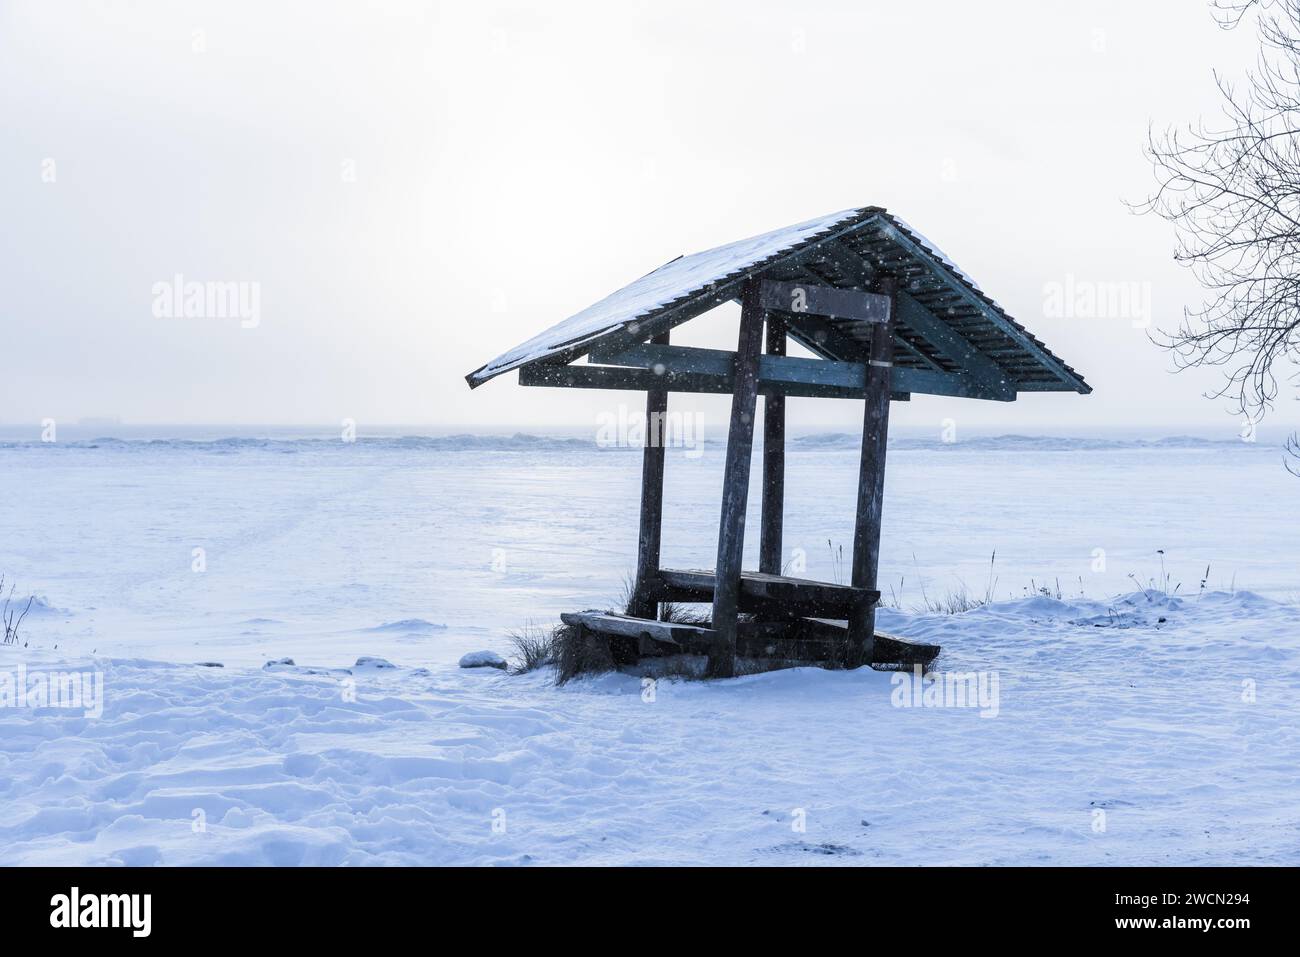 Paysage d'hiver avec neige et petit belvédère en bois sur la plage, photo de fond naturelle prise sur la côte du golfe de Finlande Banque D'Images